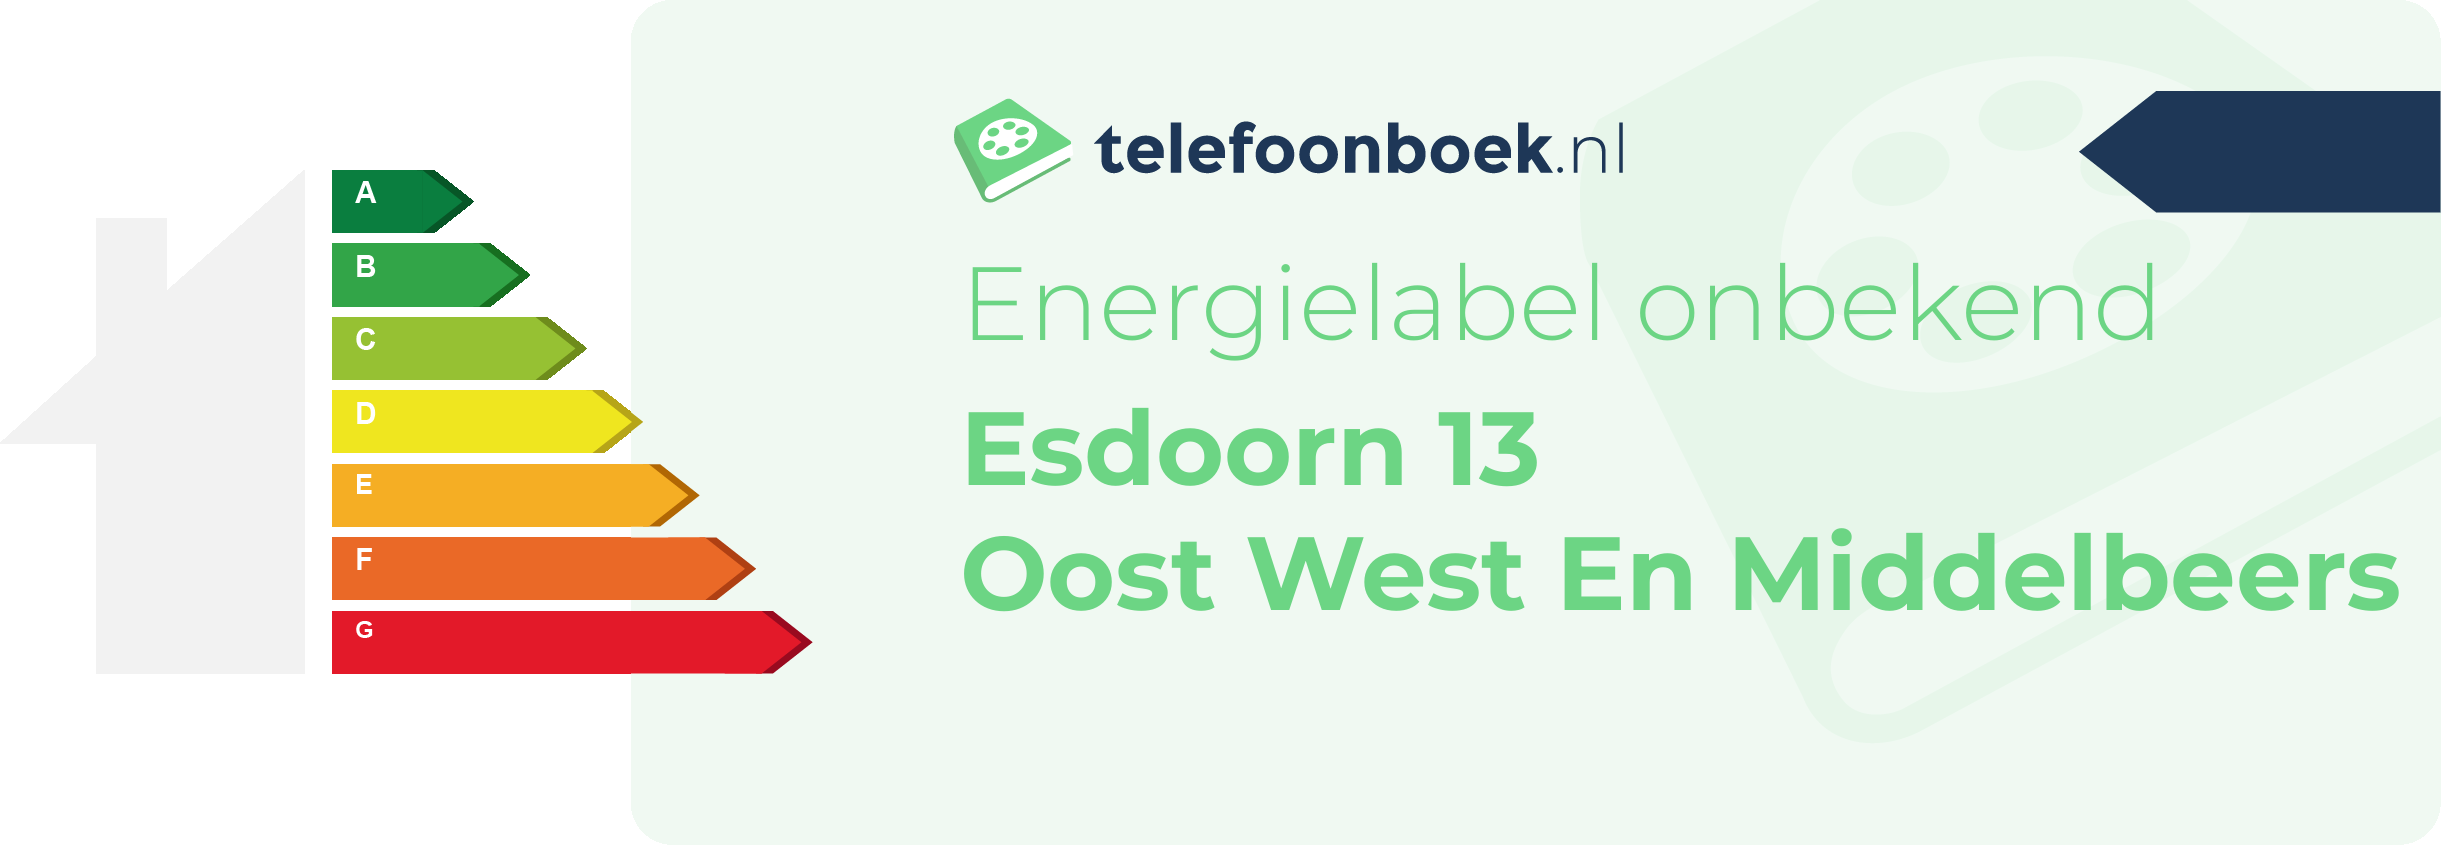 Energielabel Esdoorn 13 Oost West En Middelbeers